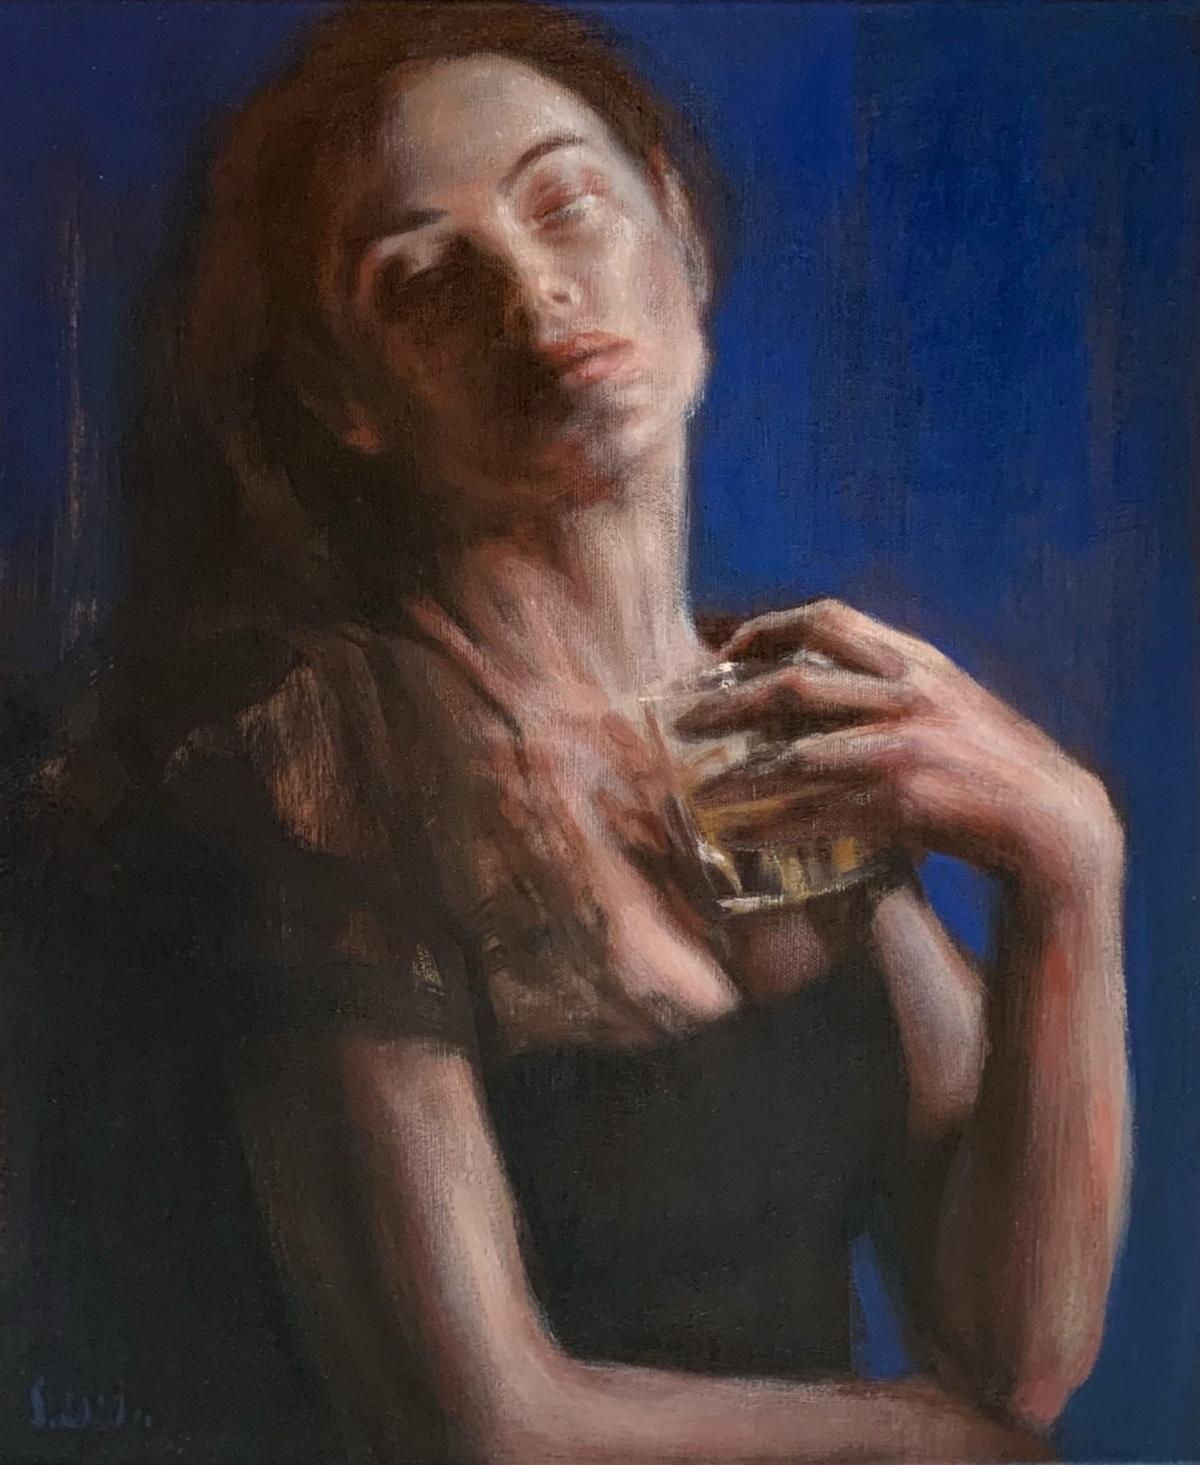 A glass - Contemporary Figurative Oil Painting, Subtle Female Portrait, Vibrant